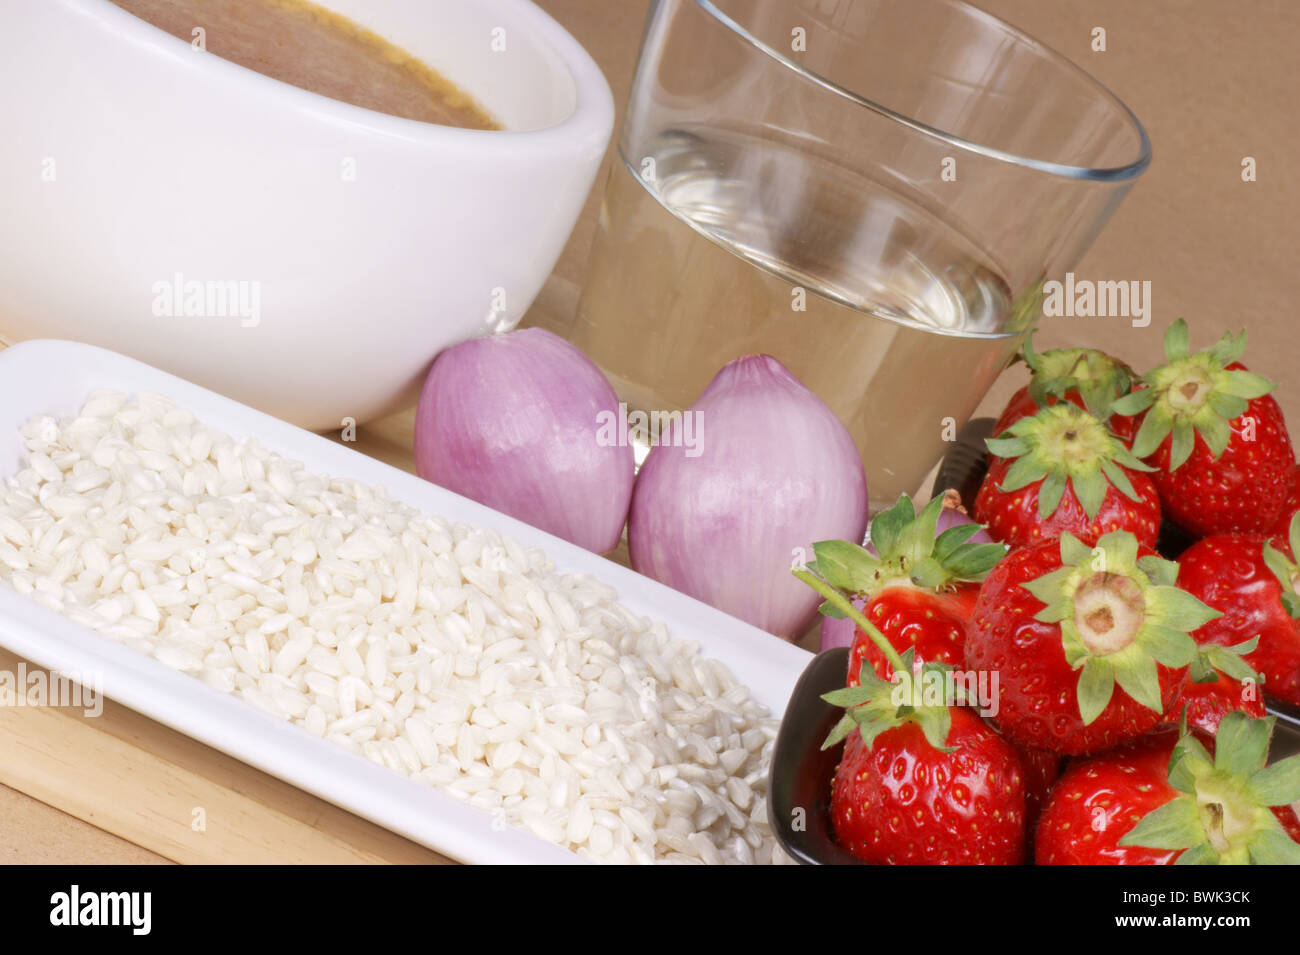 Ingredienti per il risotto con le fragole: riso bianco, fragole, cipolla, vino bianco e il brodo vegetale. Foto Stock